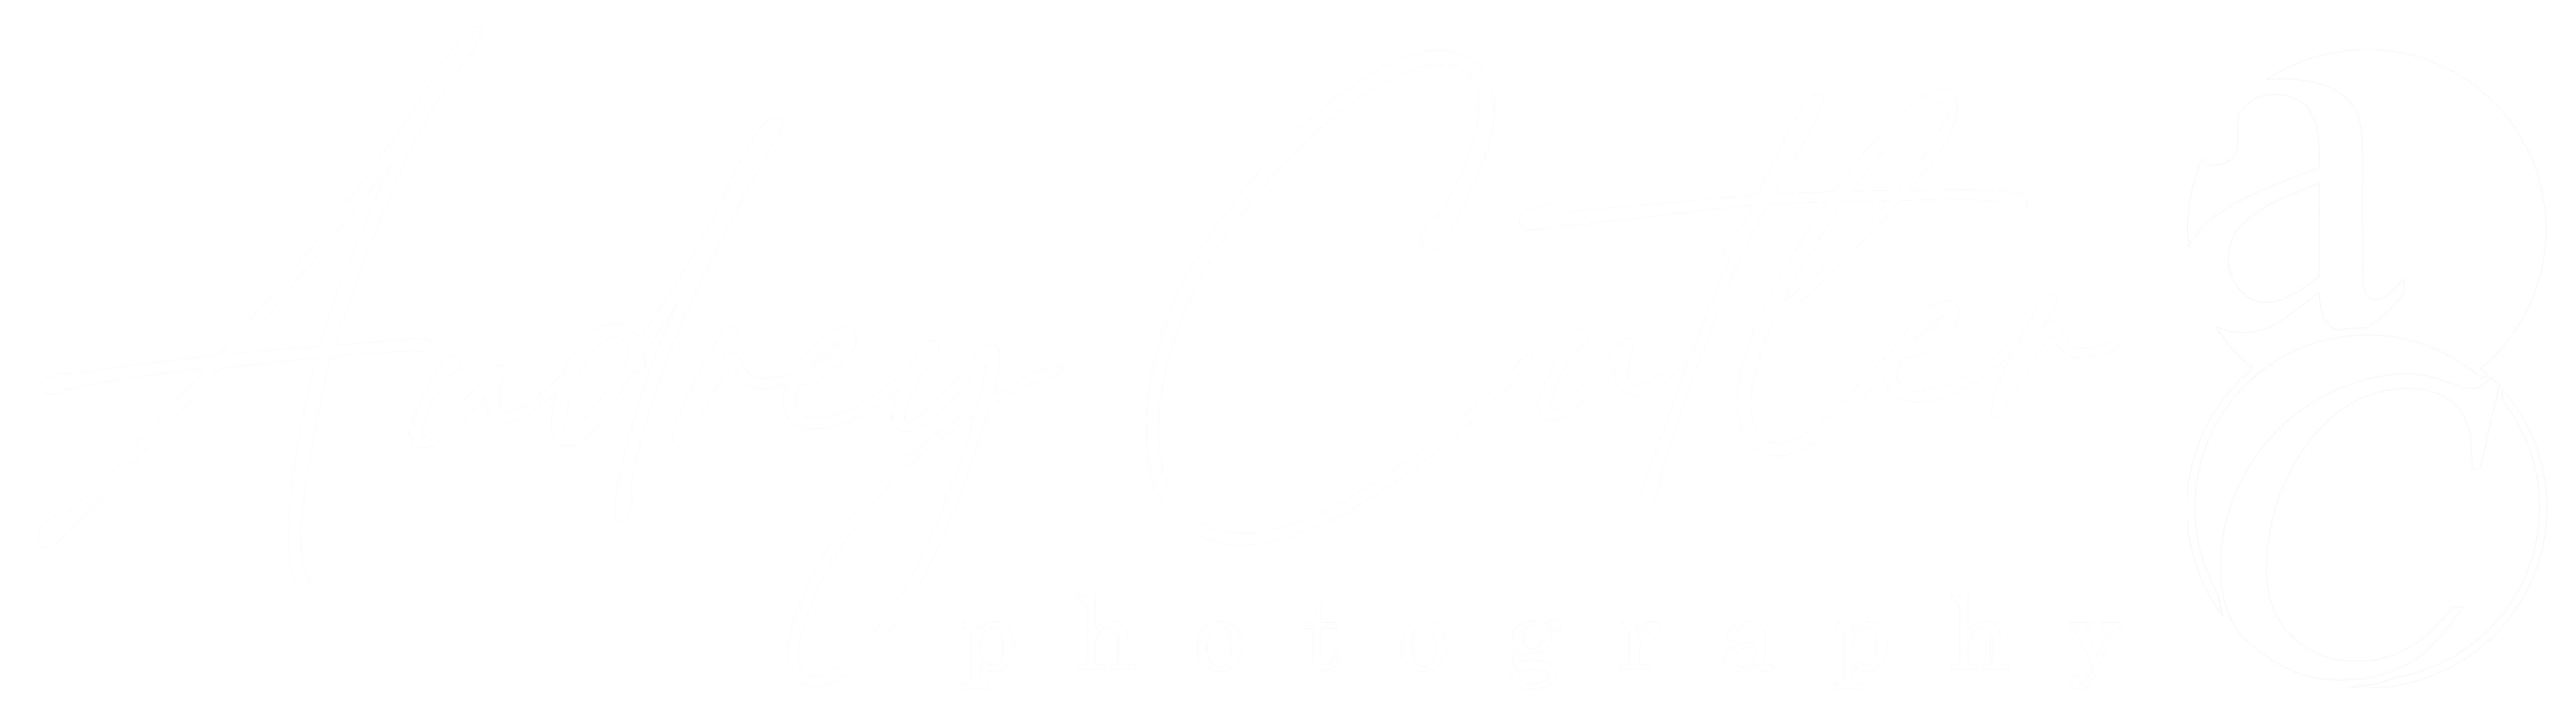 Audrey Cutler Photography Logo